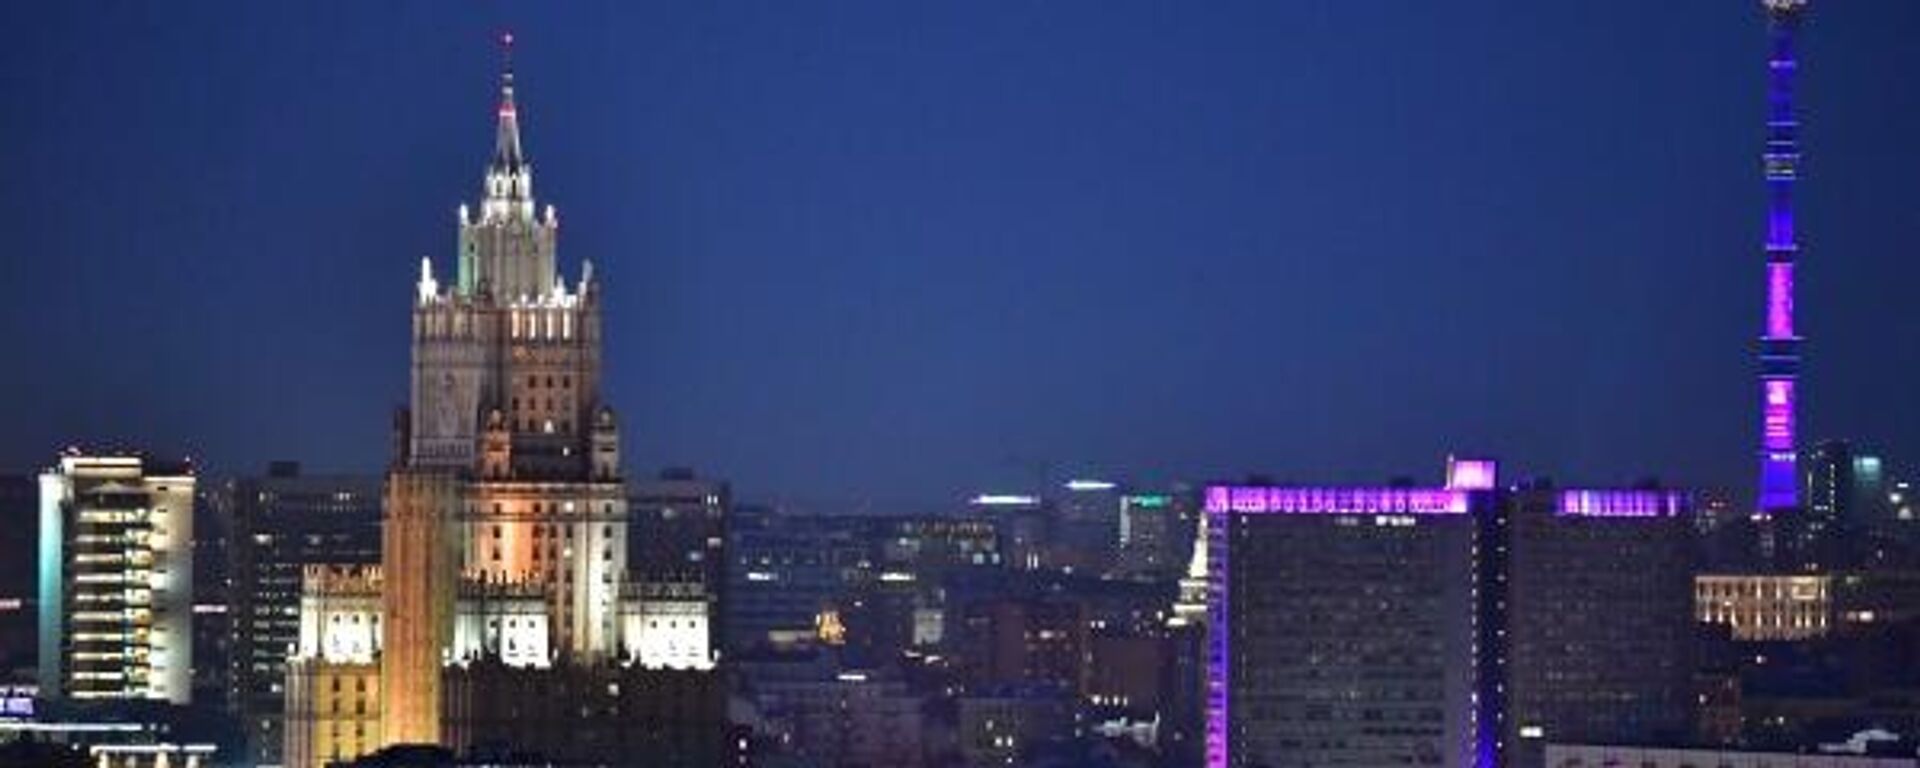 O prédio principal do Ministério das Relações Exteriores da Rússia é fotografado depois que as luzes foram apagadas durante a campanha ambiental da Hora do Planeta em Moscou, Rússia (foto de arquivo) - Sputnik Brasil, 1920, 11.11.2022